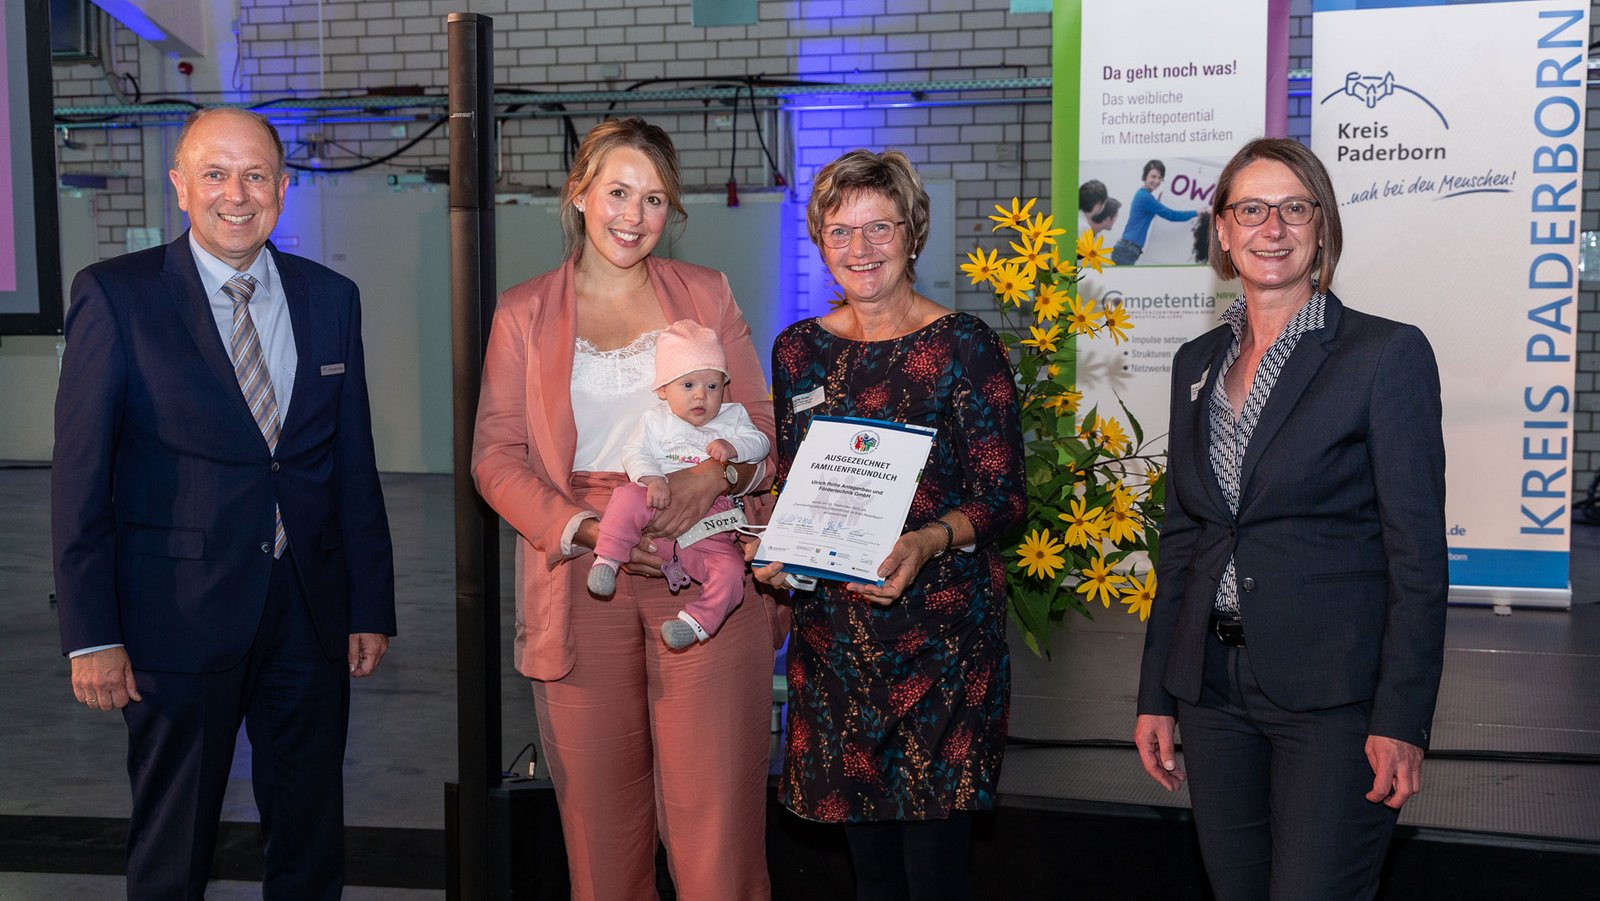 Die Auszeichnung nahmen gleich drei Generationen entgegen: Corinna Rotte mit Nora und Brigitte Rotte